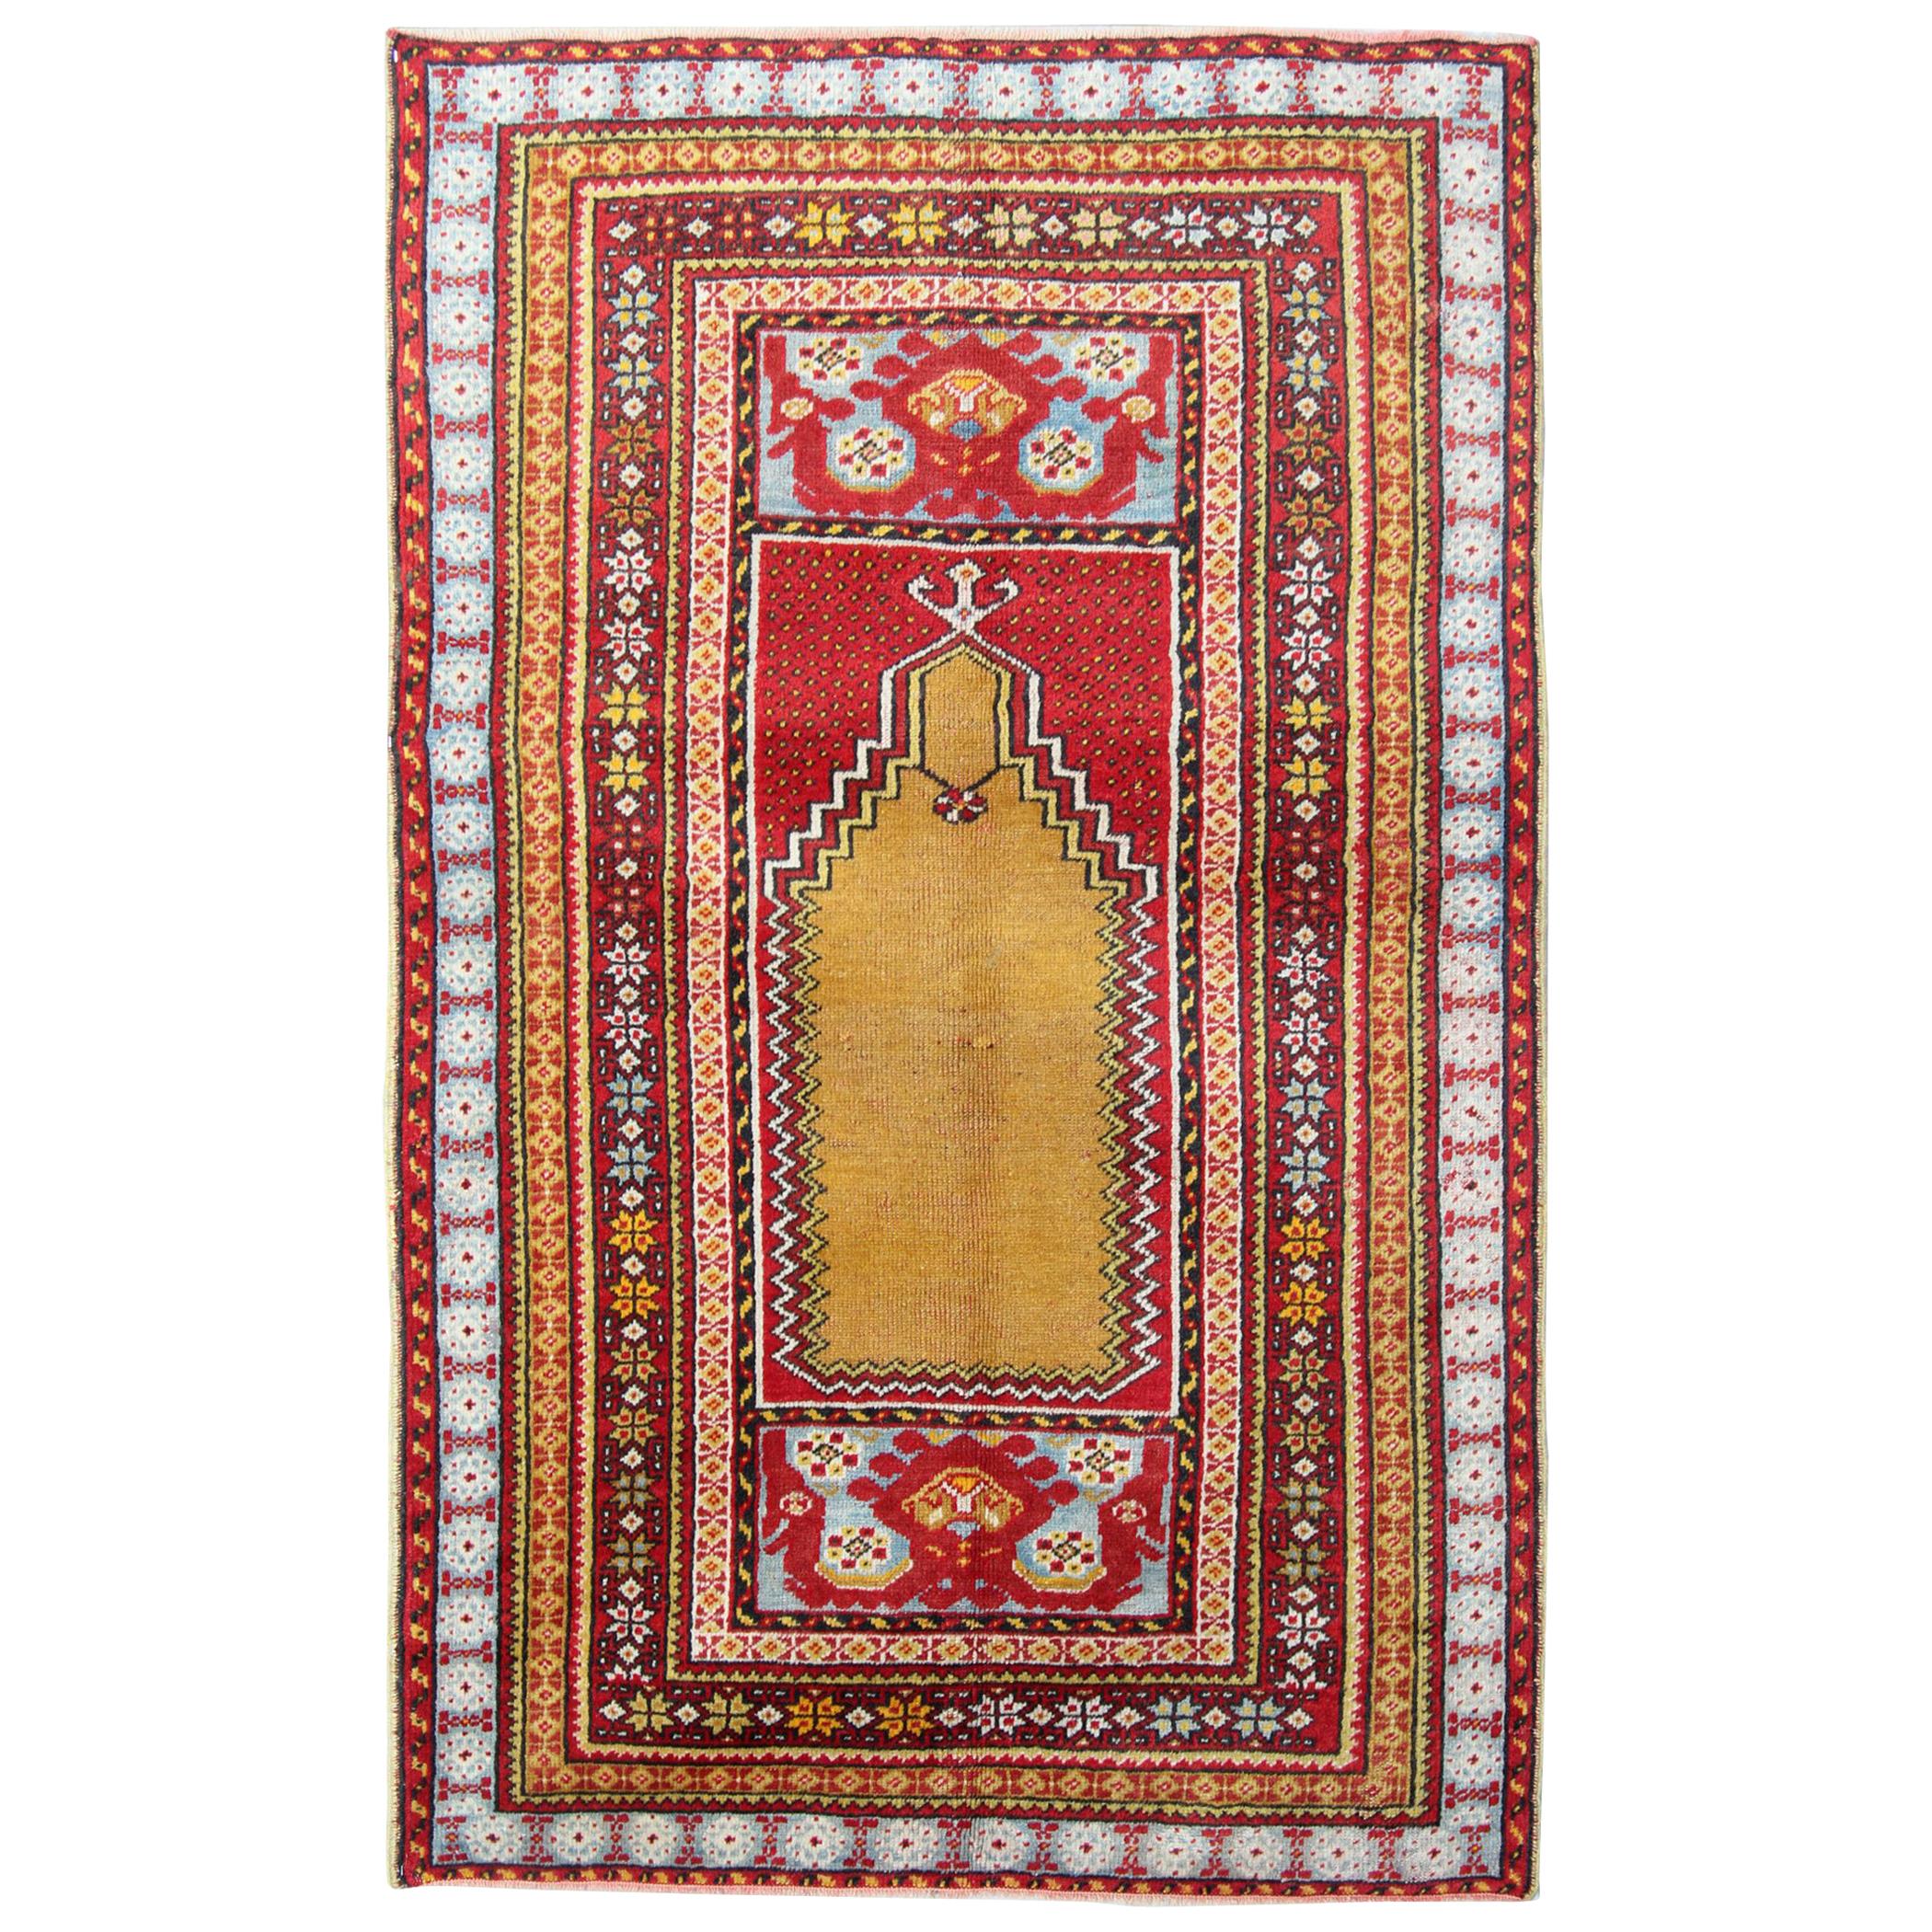 Tapis anciens faits main, tapis turc, tapis de salon en vente décoration intérieure